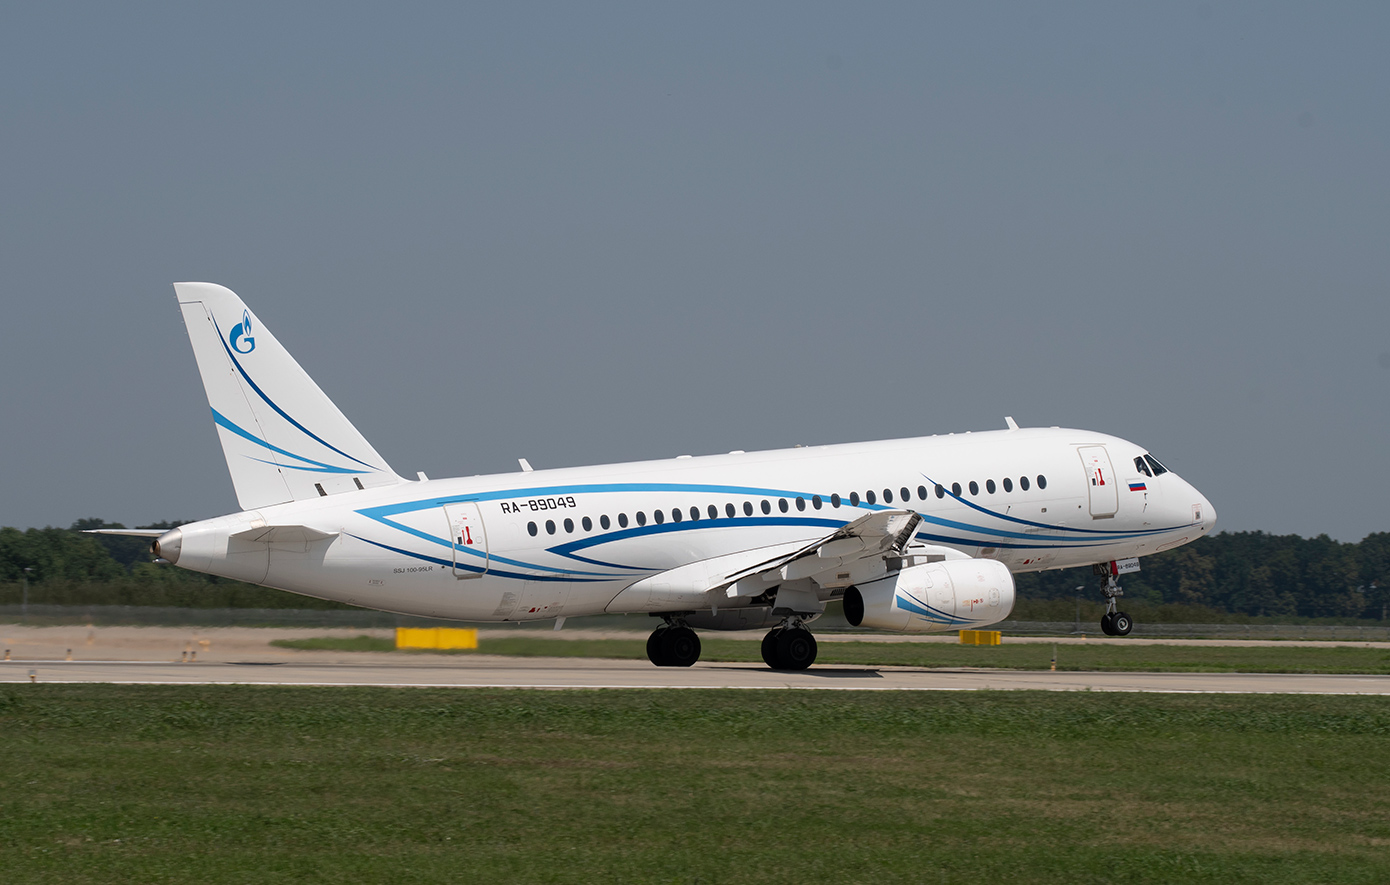 Ρωσικό αεροσκάφος προσγειώθηκε στην Άγκυρα &#8211; Επίκειται μεγάλη ανταλλαγή κρατουμένων